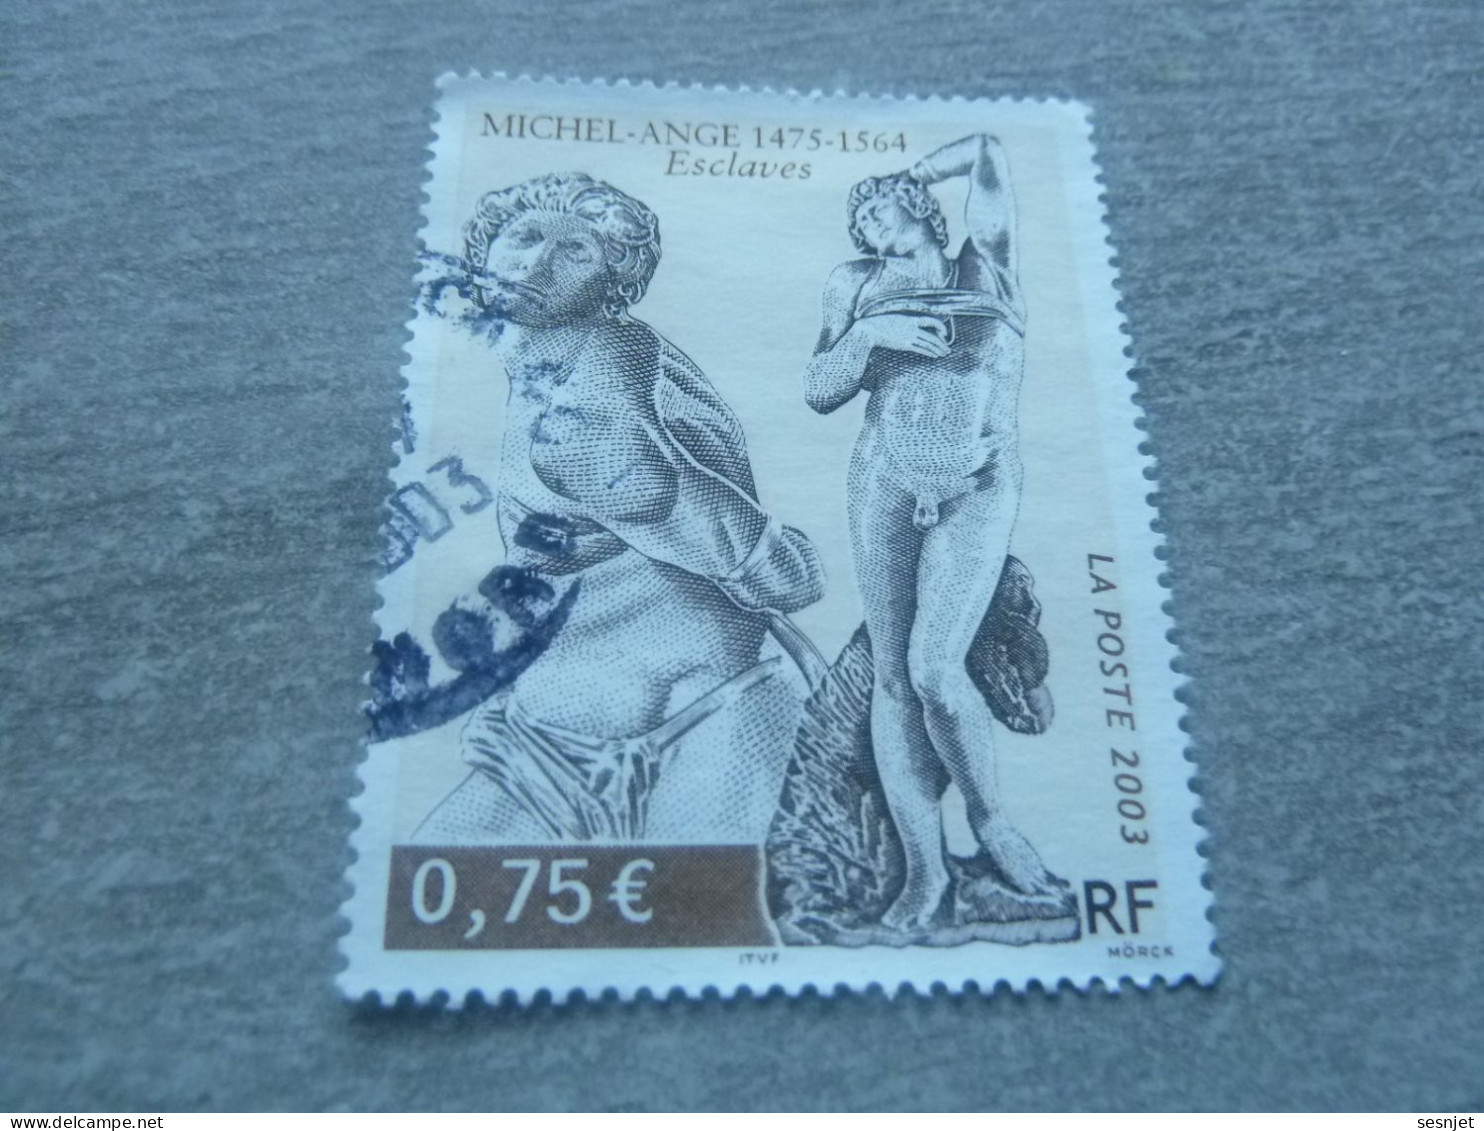 Michel-Ange (1475-1564) - Esclaves - 0.75 € - Yt 3558 - Multicolore - Oblitéré - Année 2003 - - Beeldhouwkunst